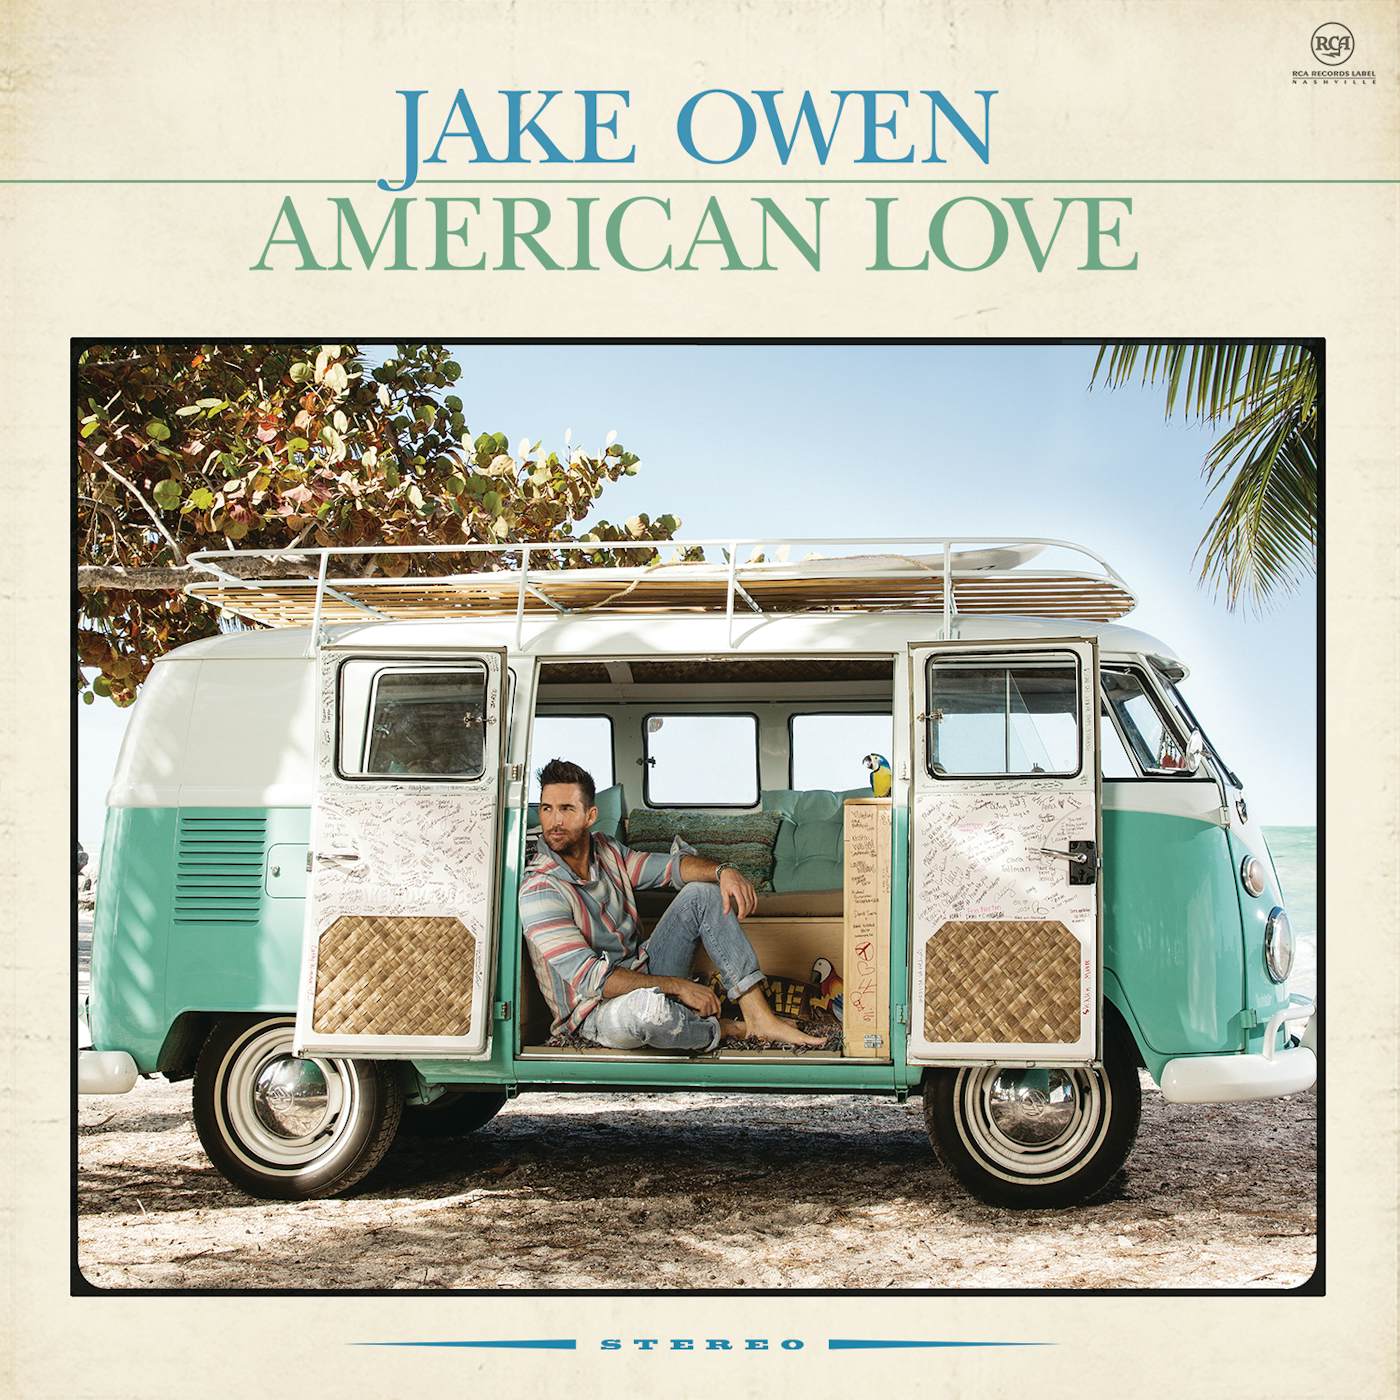 Jake Owen AMERICAN LOVE CD